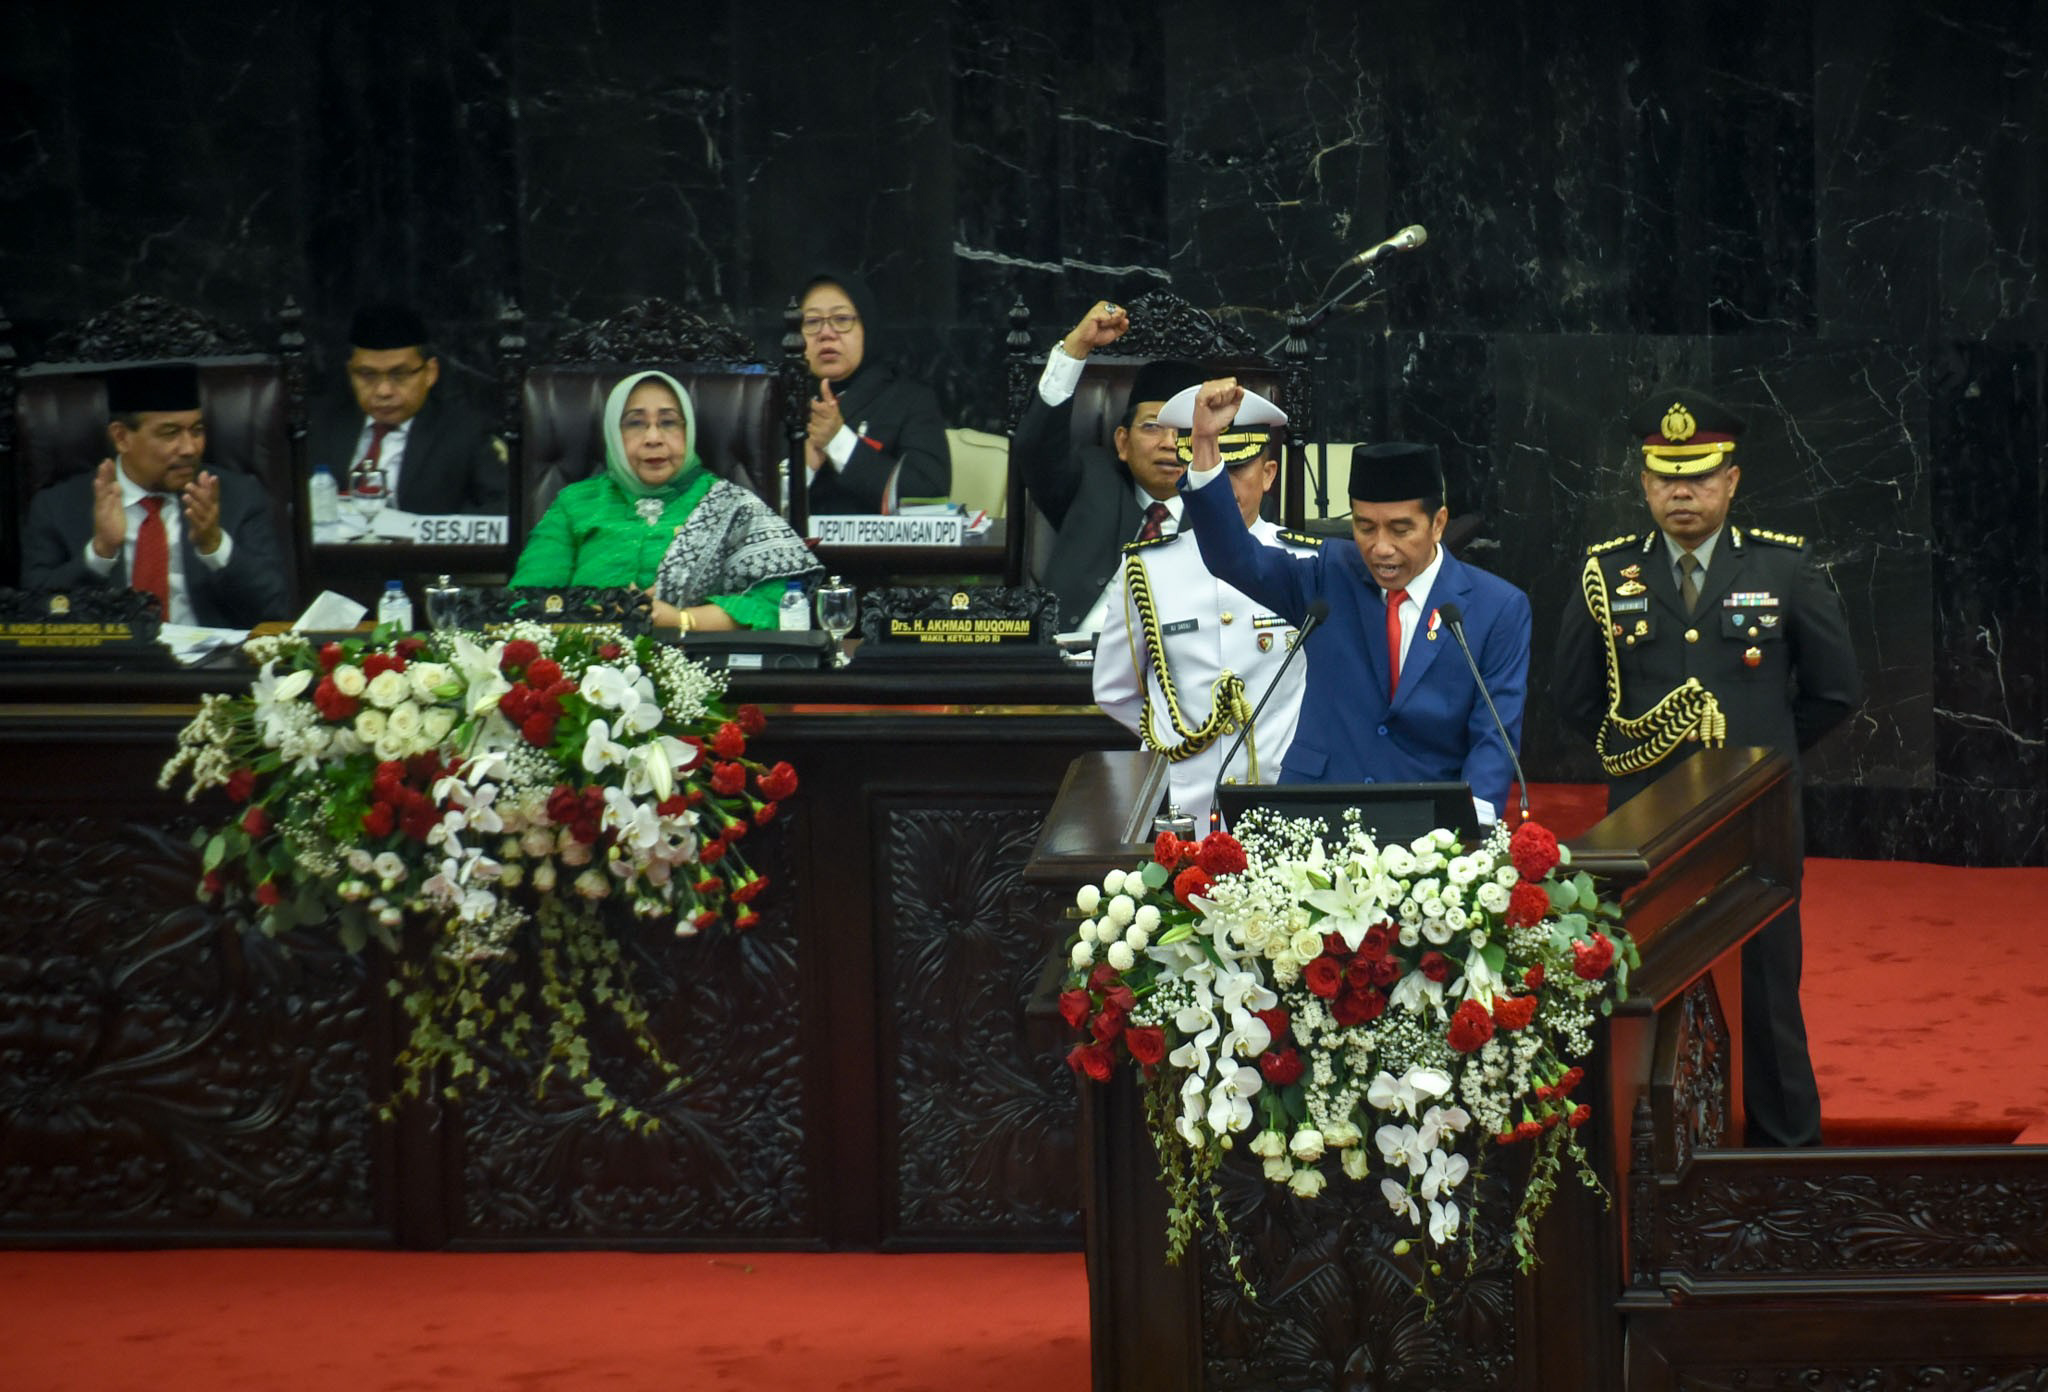 Naskah Lengkap Pidato Presiden Jokowi Soal RUU APBN 2019 dan Nota Keuangan